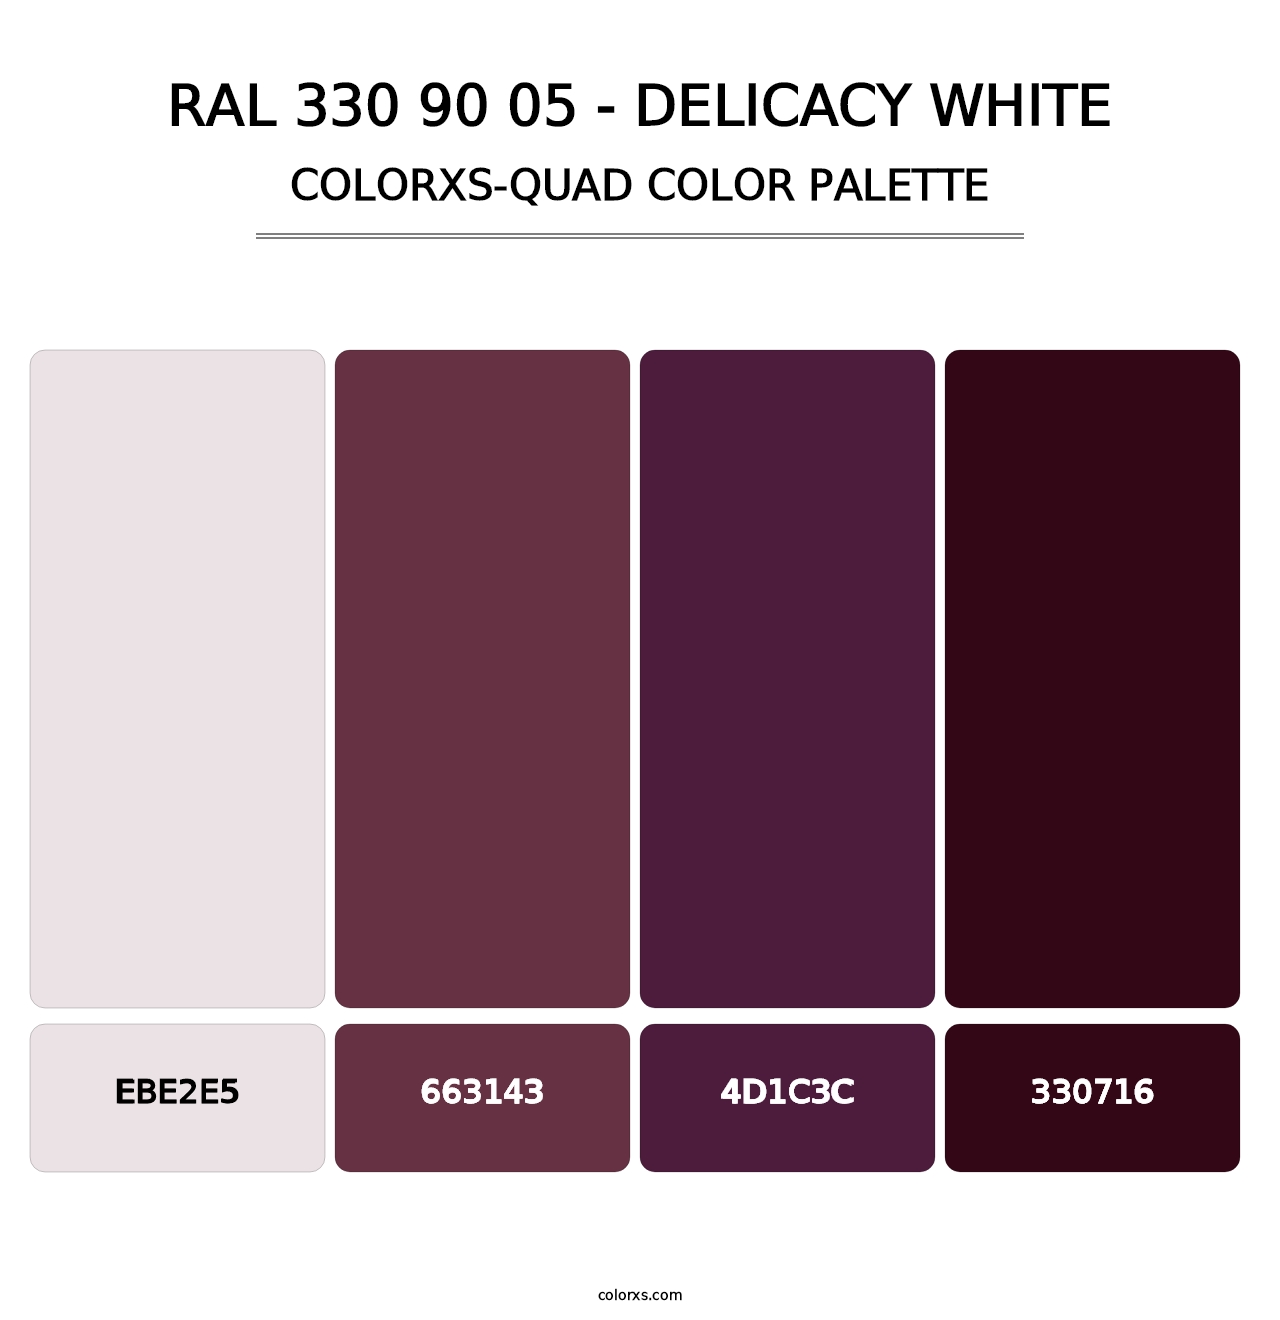 RAL 330 90 05 - Delicacy White - Colorxs Quad Palette